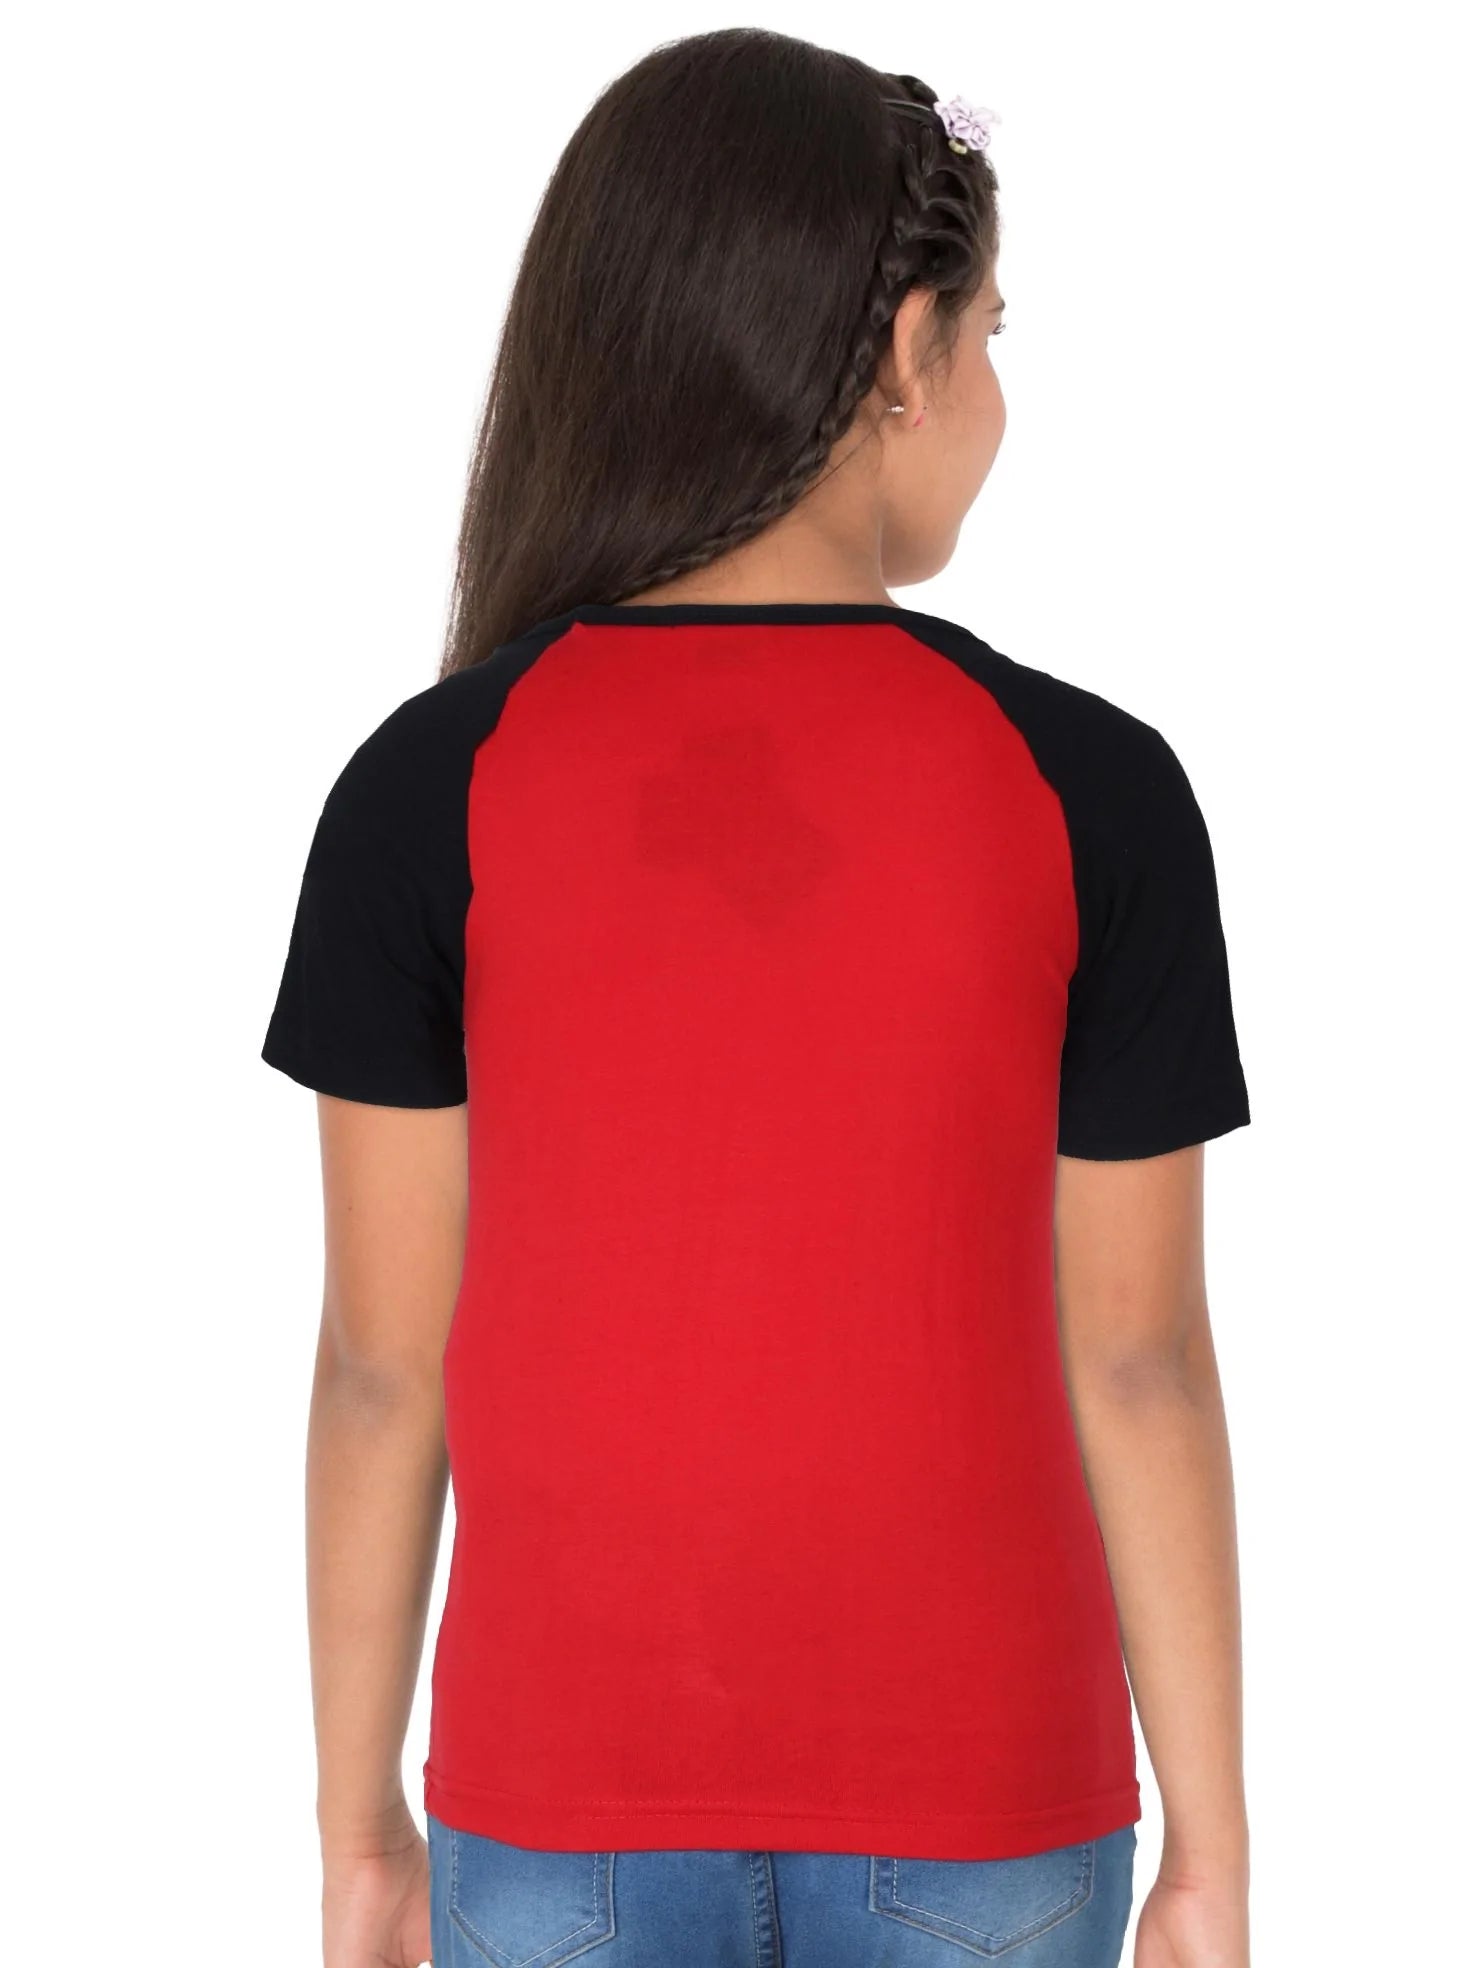 Fleximaa Boys & Girls Printed Raglan Half Sleeve T-Shirt (Pack of 2) - Fleximaa